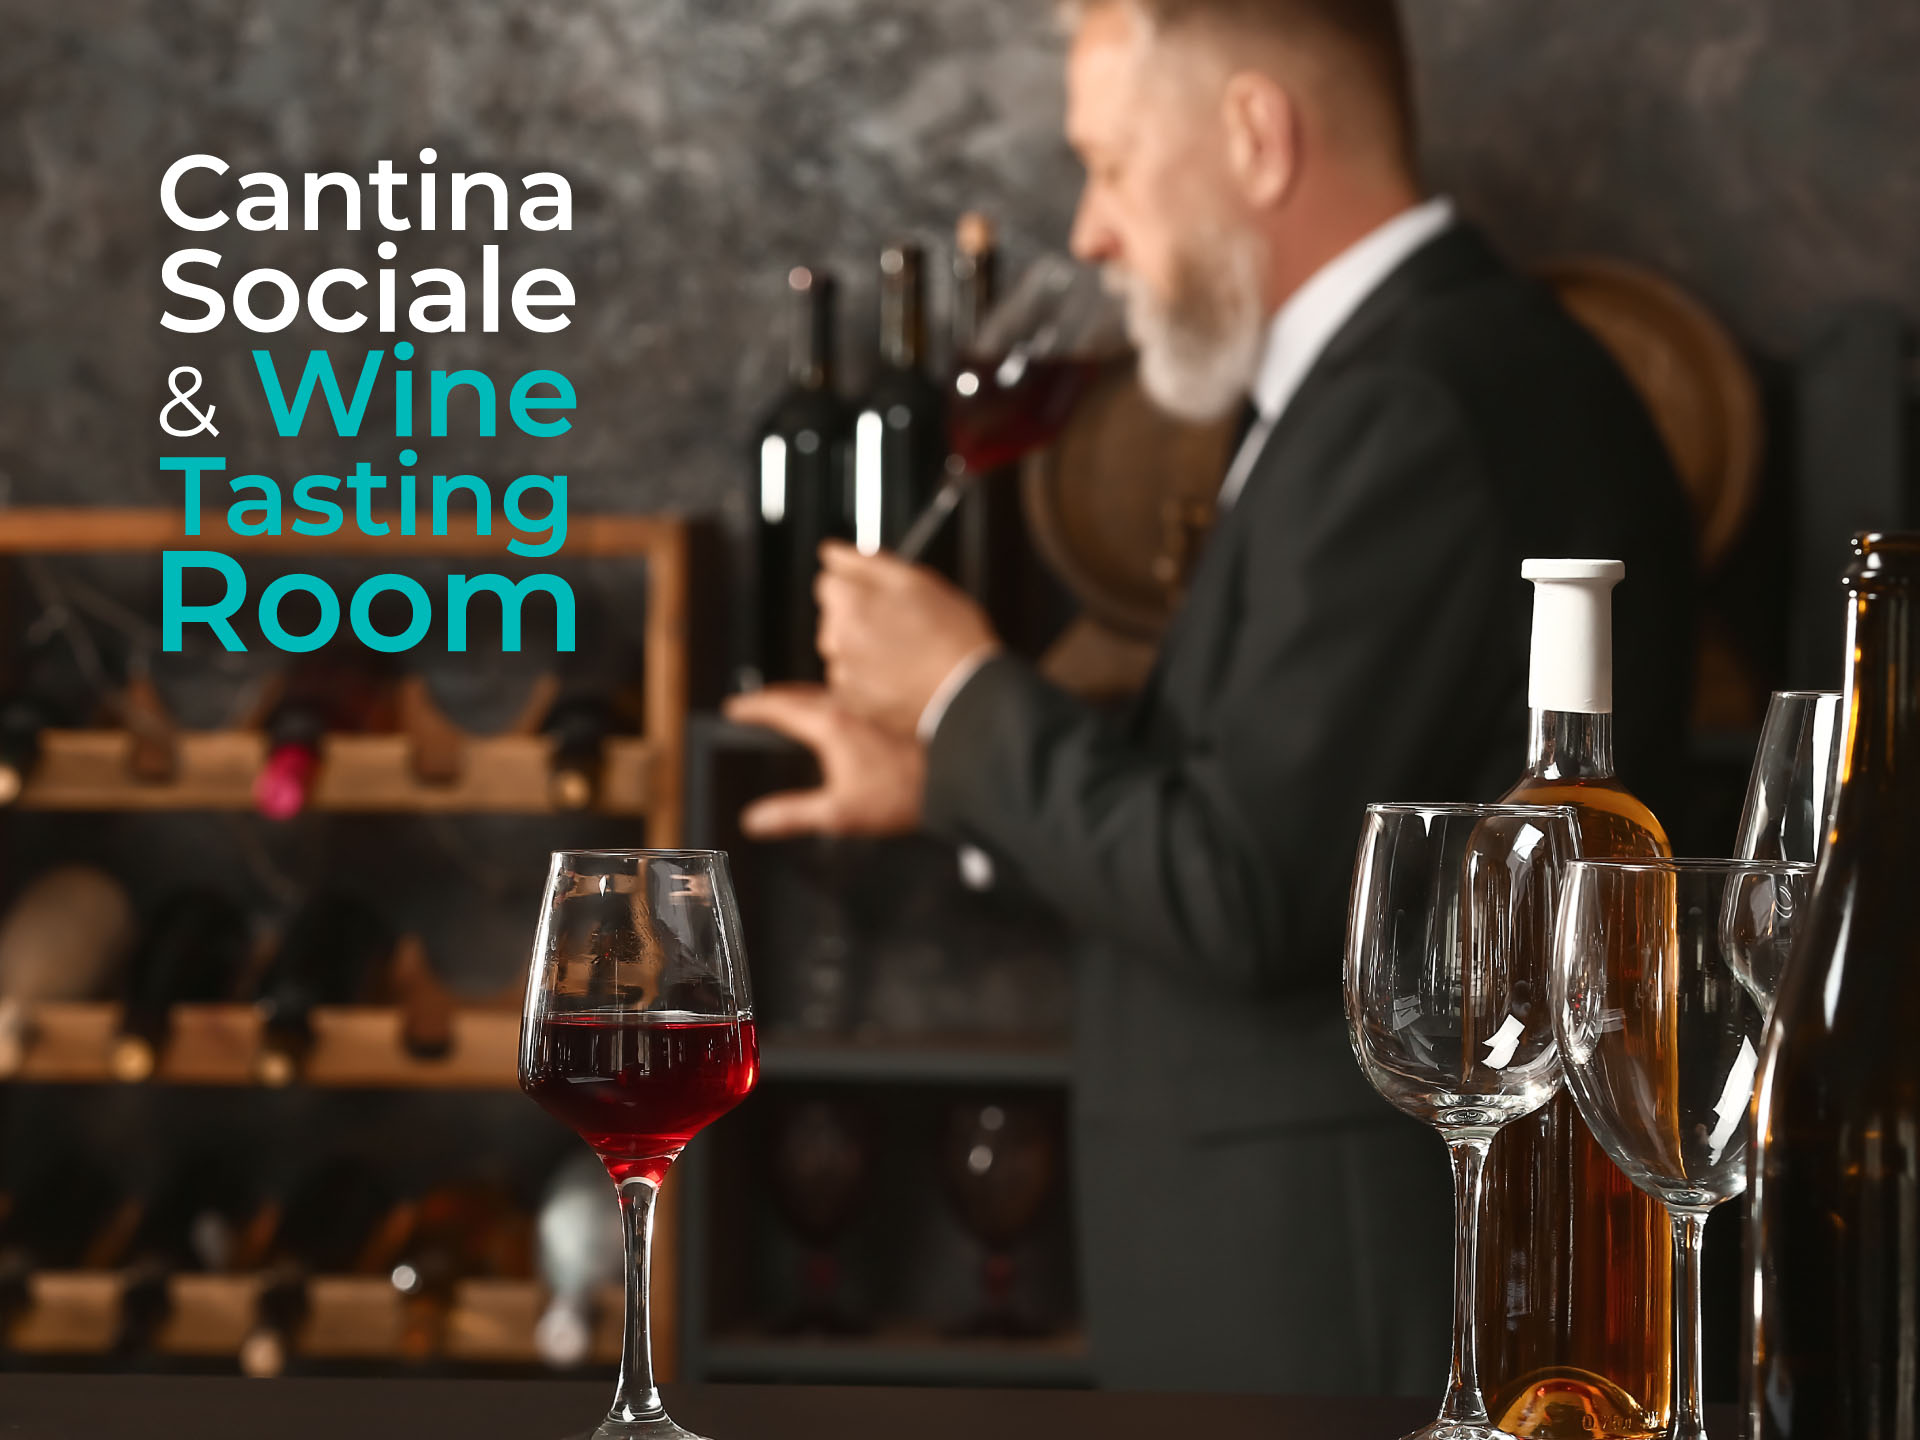 Wineleven - Dalla Cantina Sociale alla Wine Room